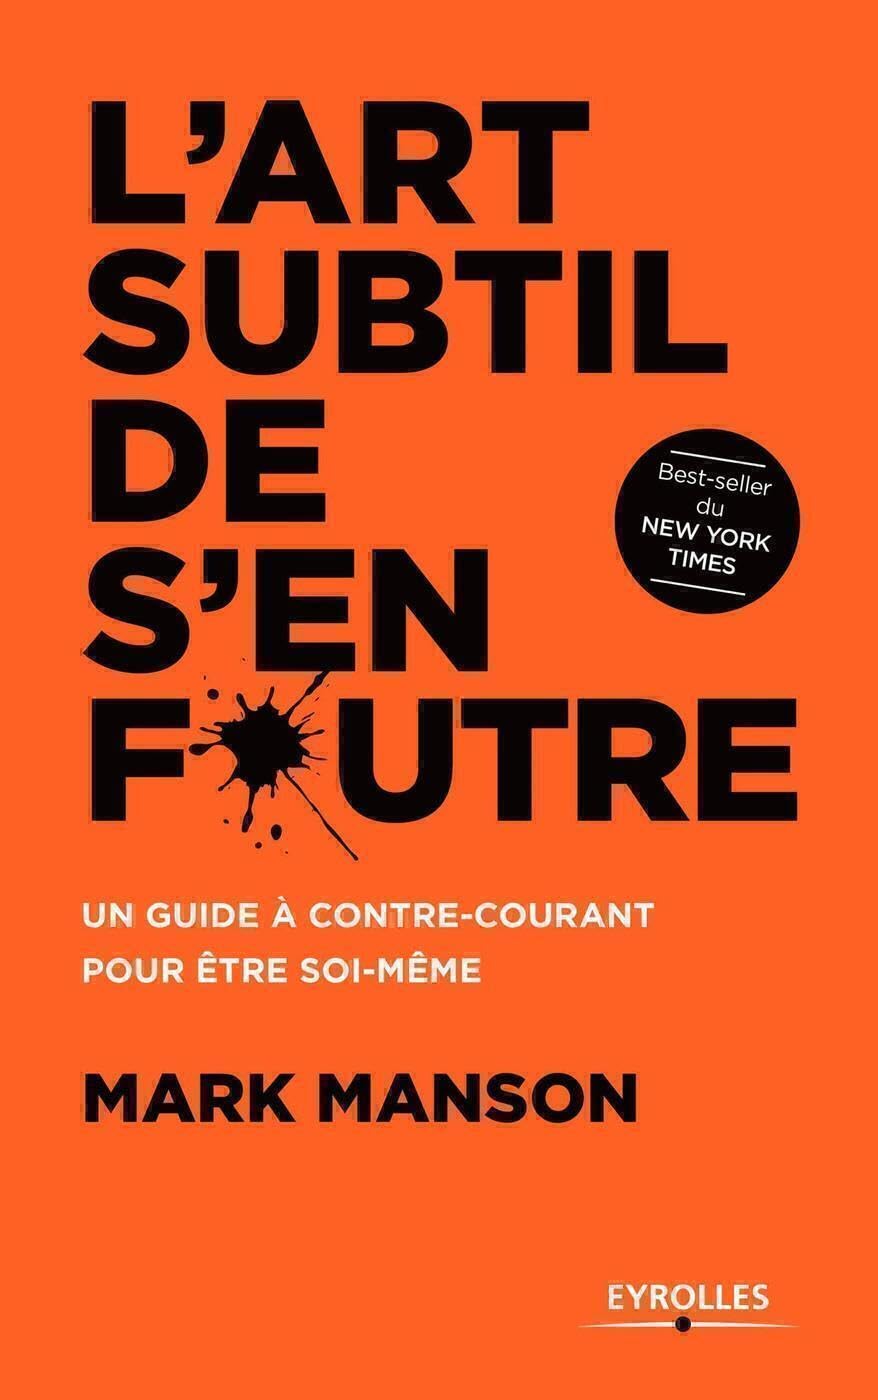 Mark Manson: L'art subtil de s'en foutre (French language, 2017)